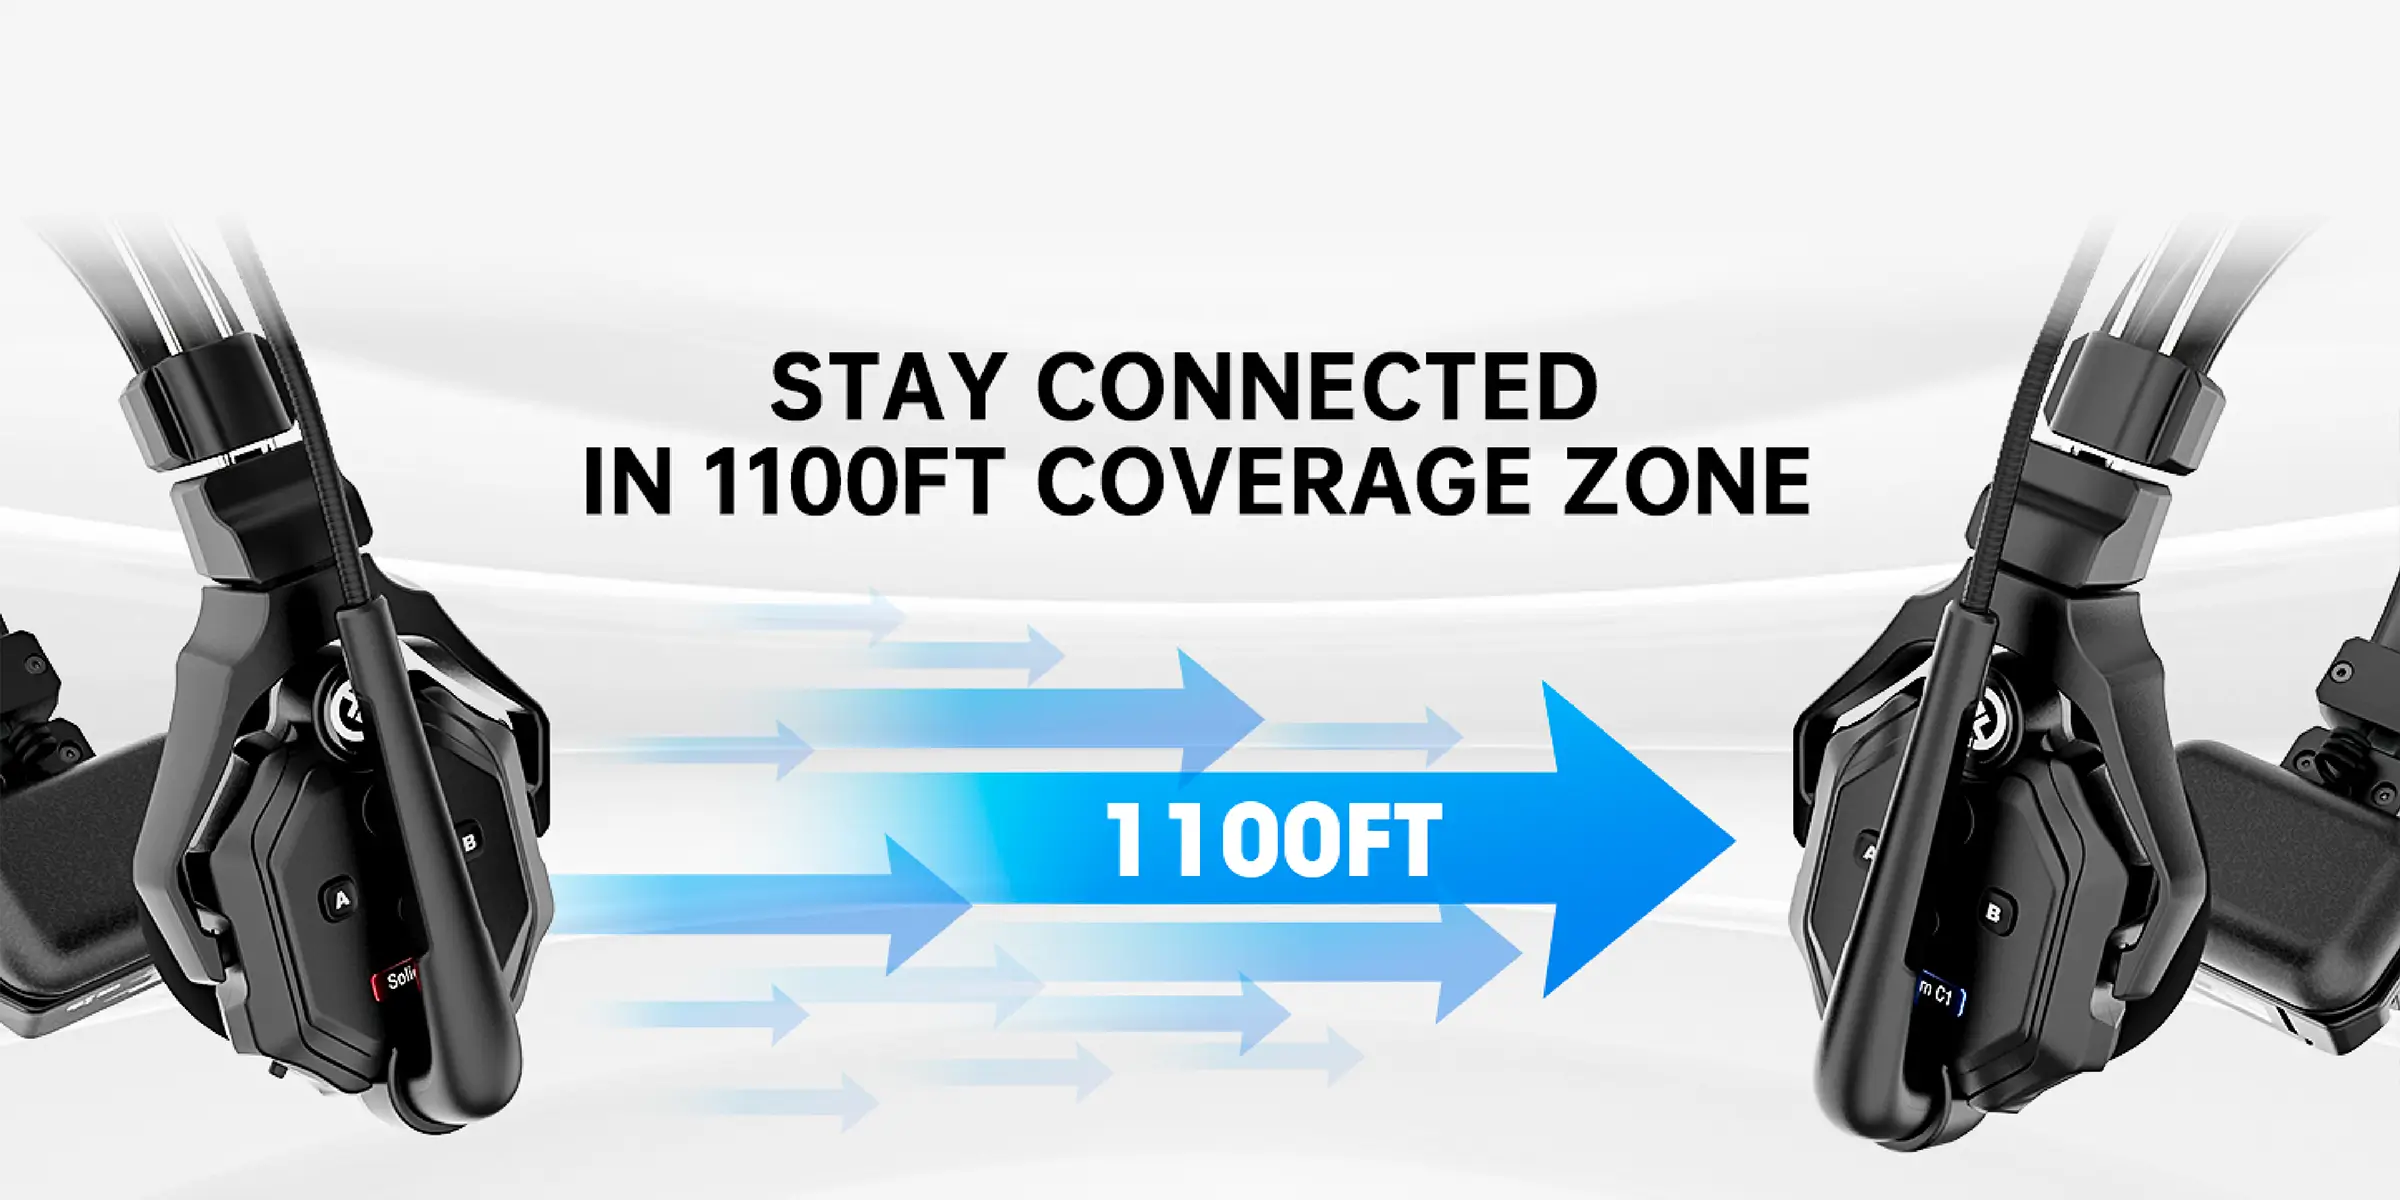 سیگنال‌دهی سیستم ارتباط دو طرفه بیسیم Solidcom C1 تا فاصله 300 متری (1000 فیت) بصورت پایدار و بدون قطعی انجام میشود.